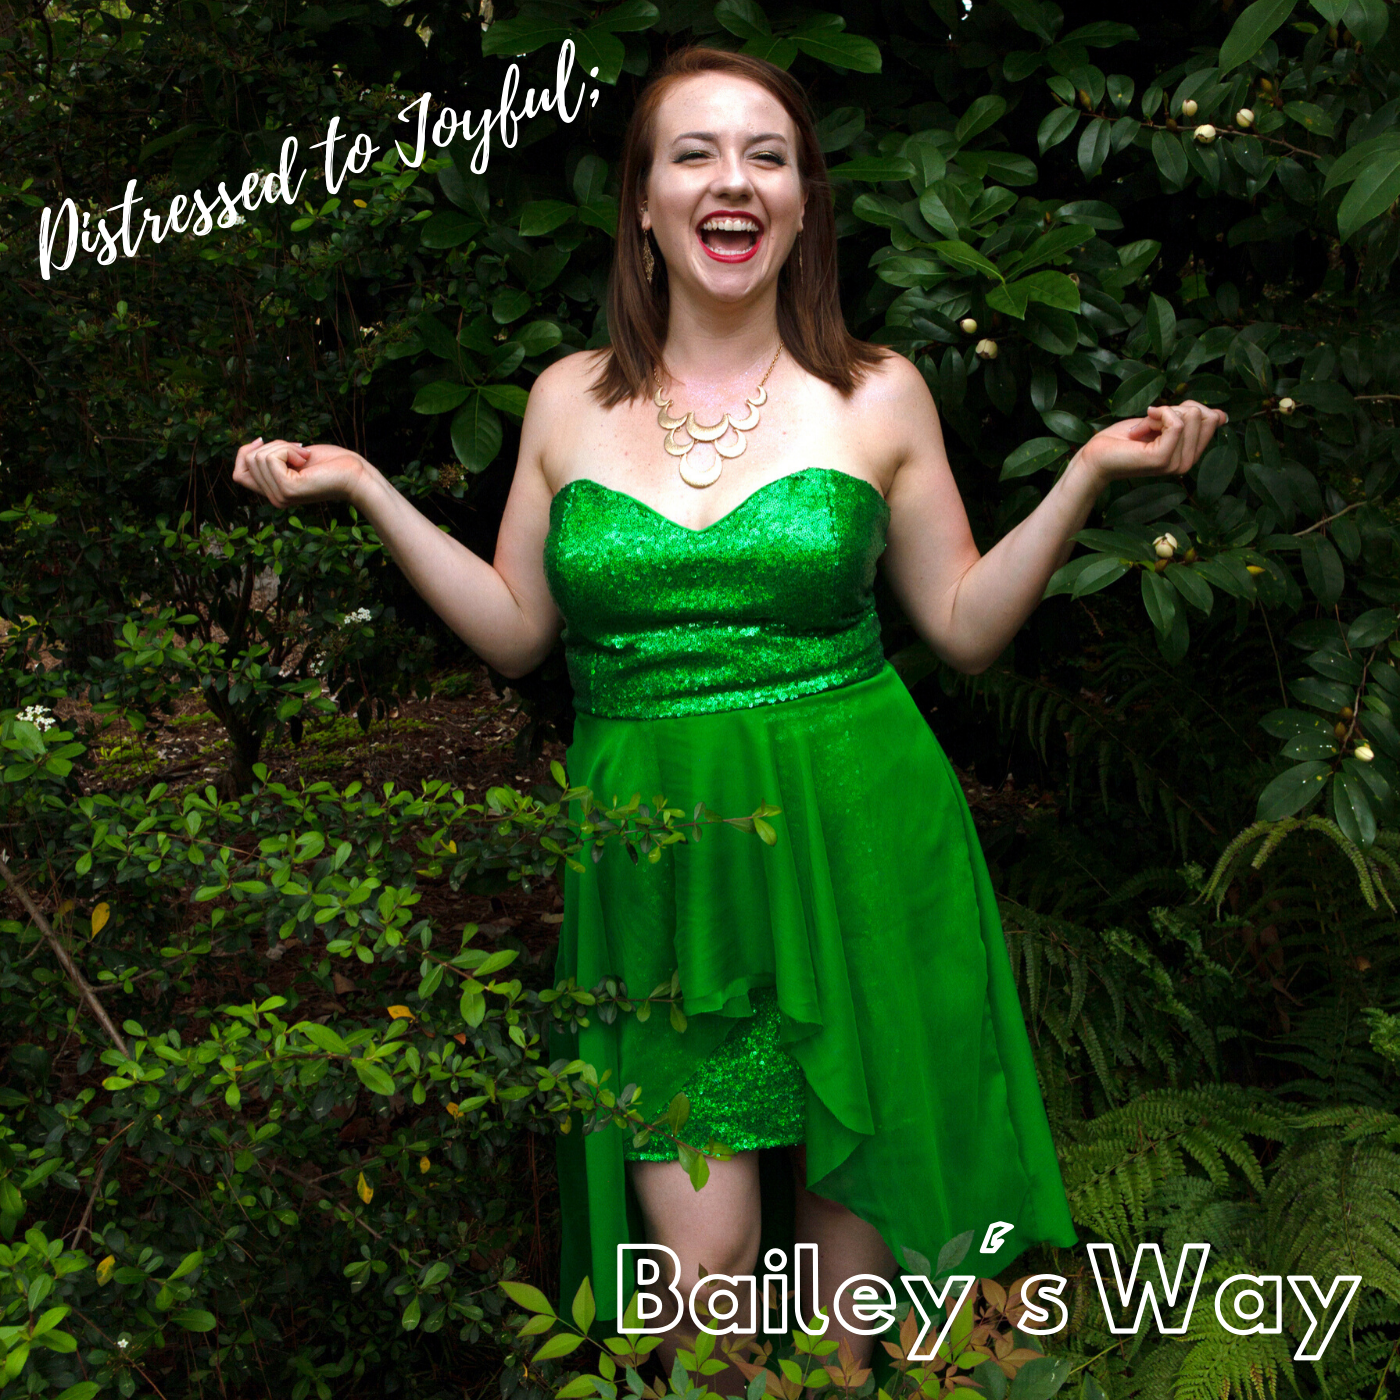 Distressed to Joyful; Bailey's Way Podcast